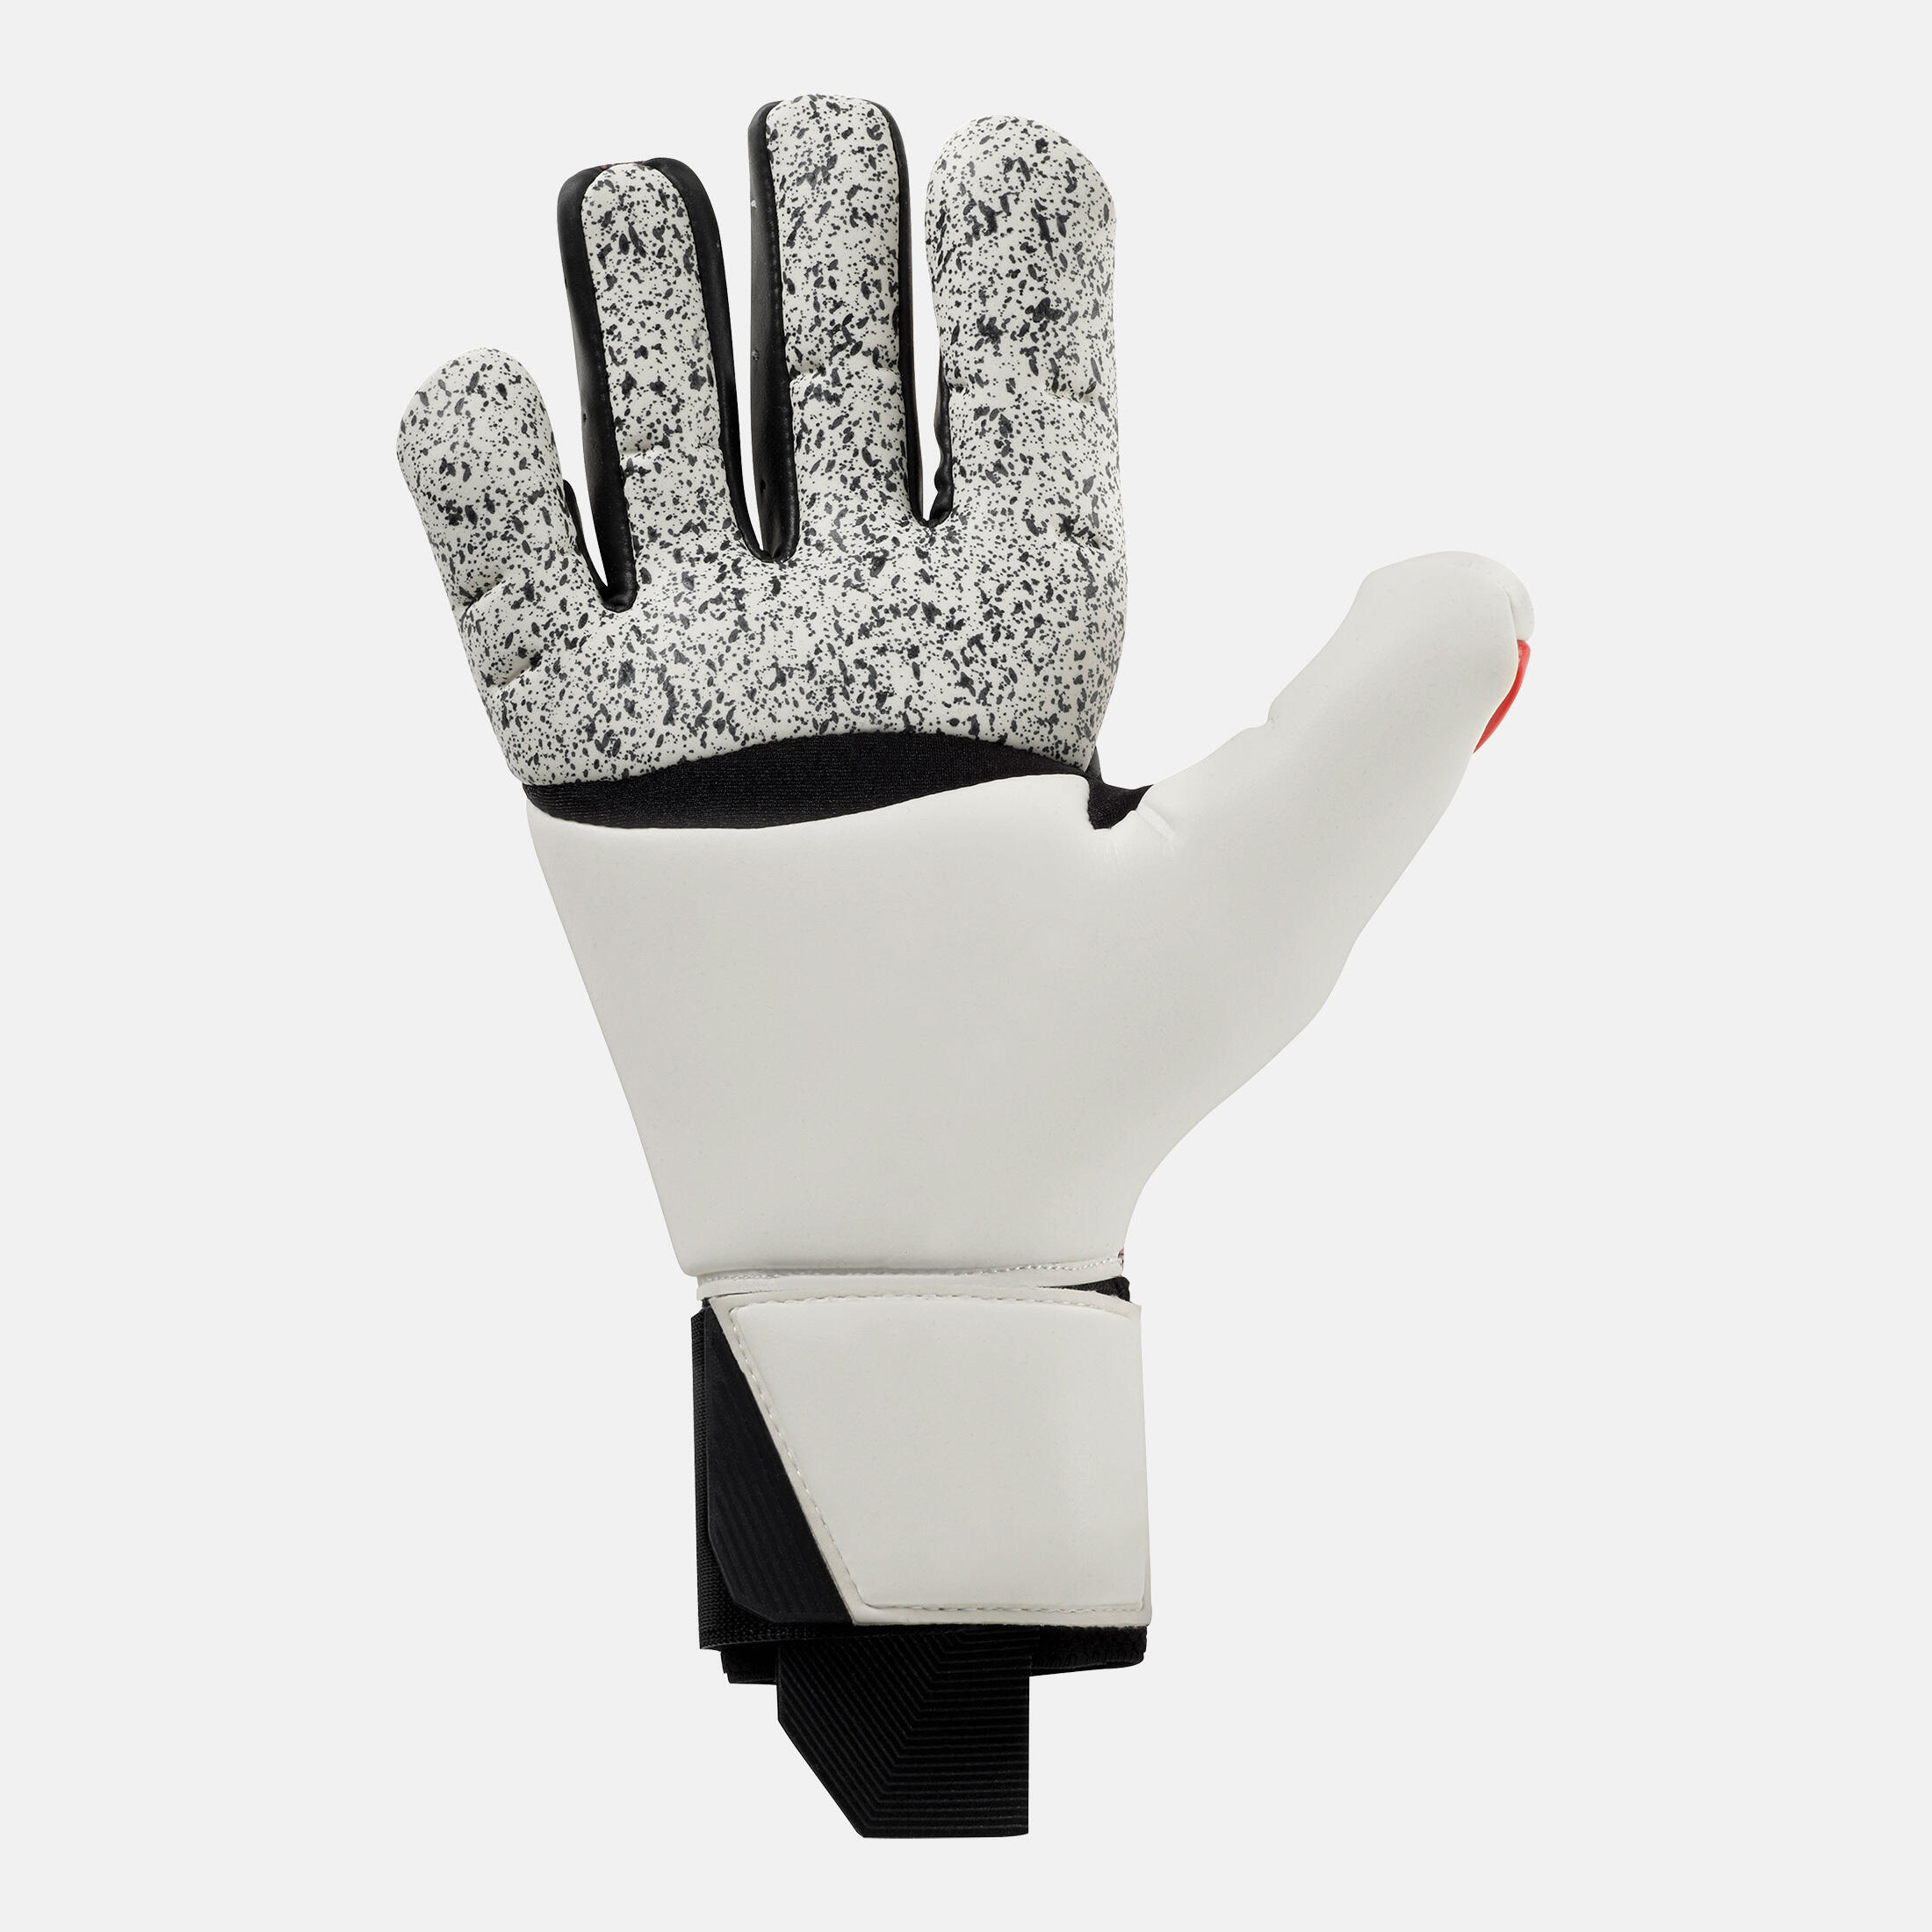 Uhlsport Powerline HYPERFLEX HN Junior Goalkeeper Gloves Size 6.5 Black/Red/Wht 2/4